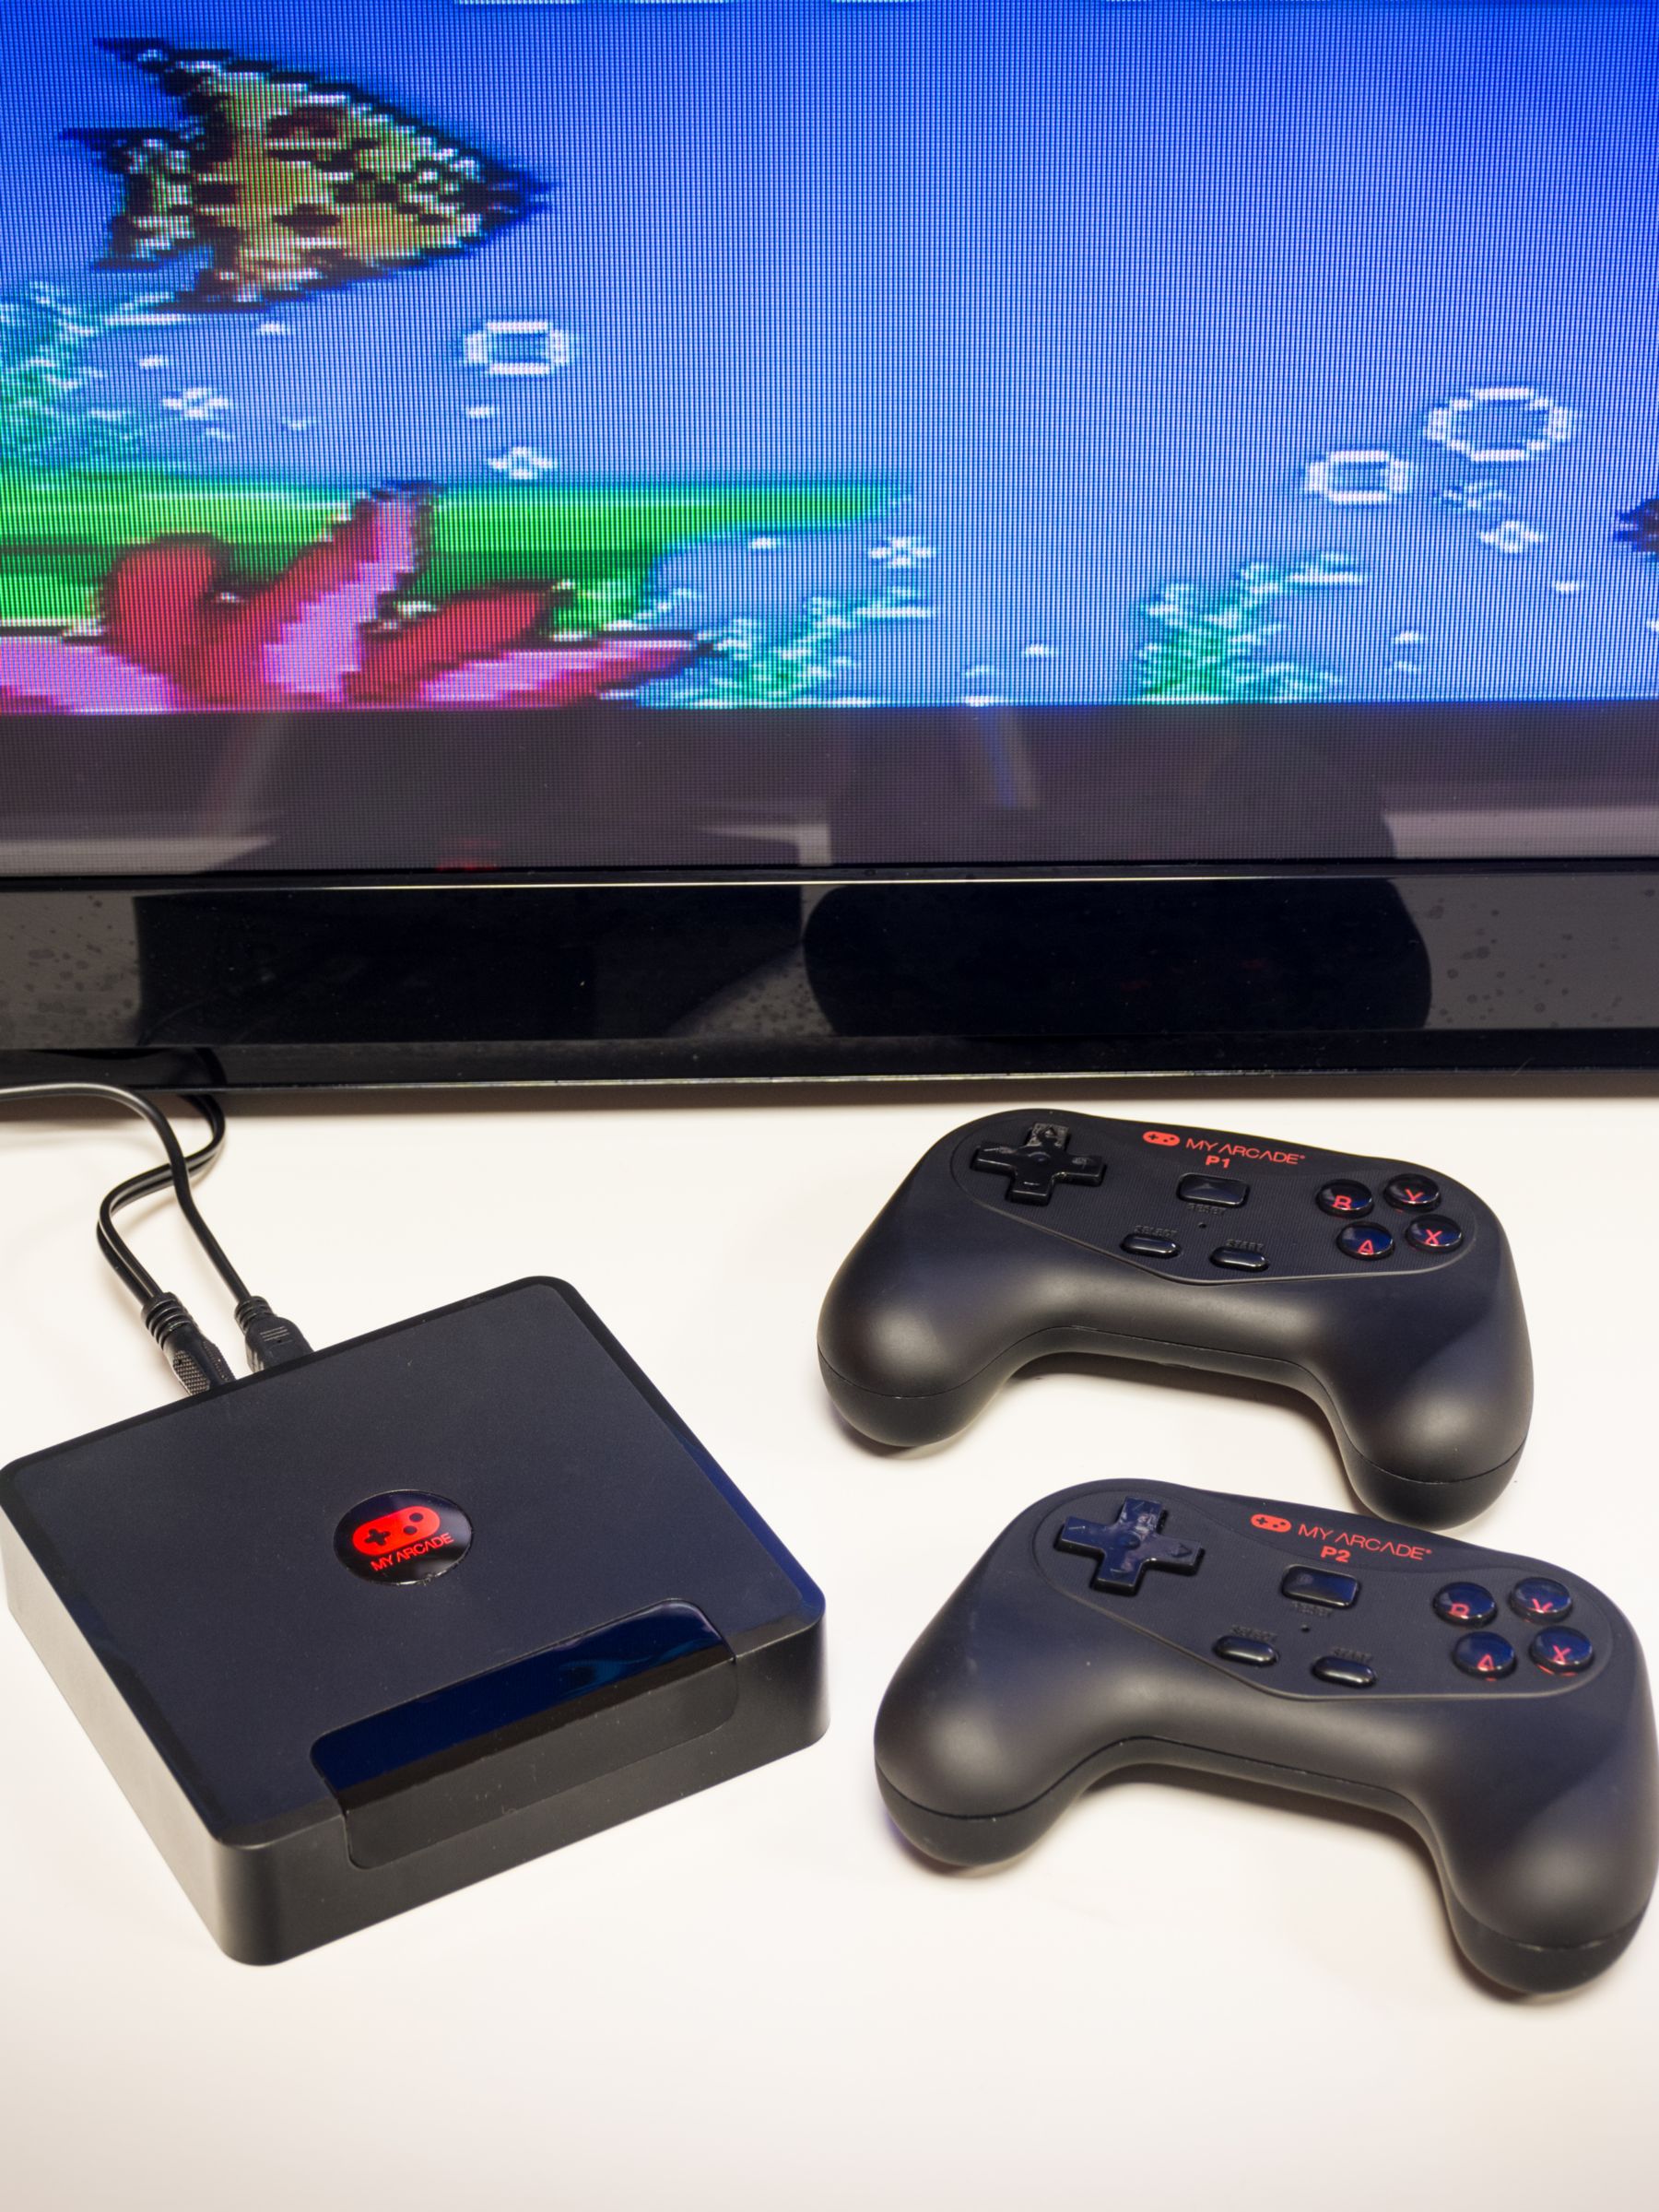 red5 retro mini games controller